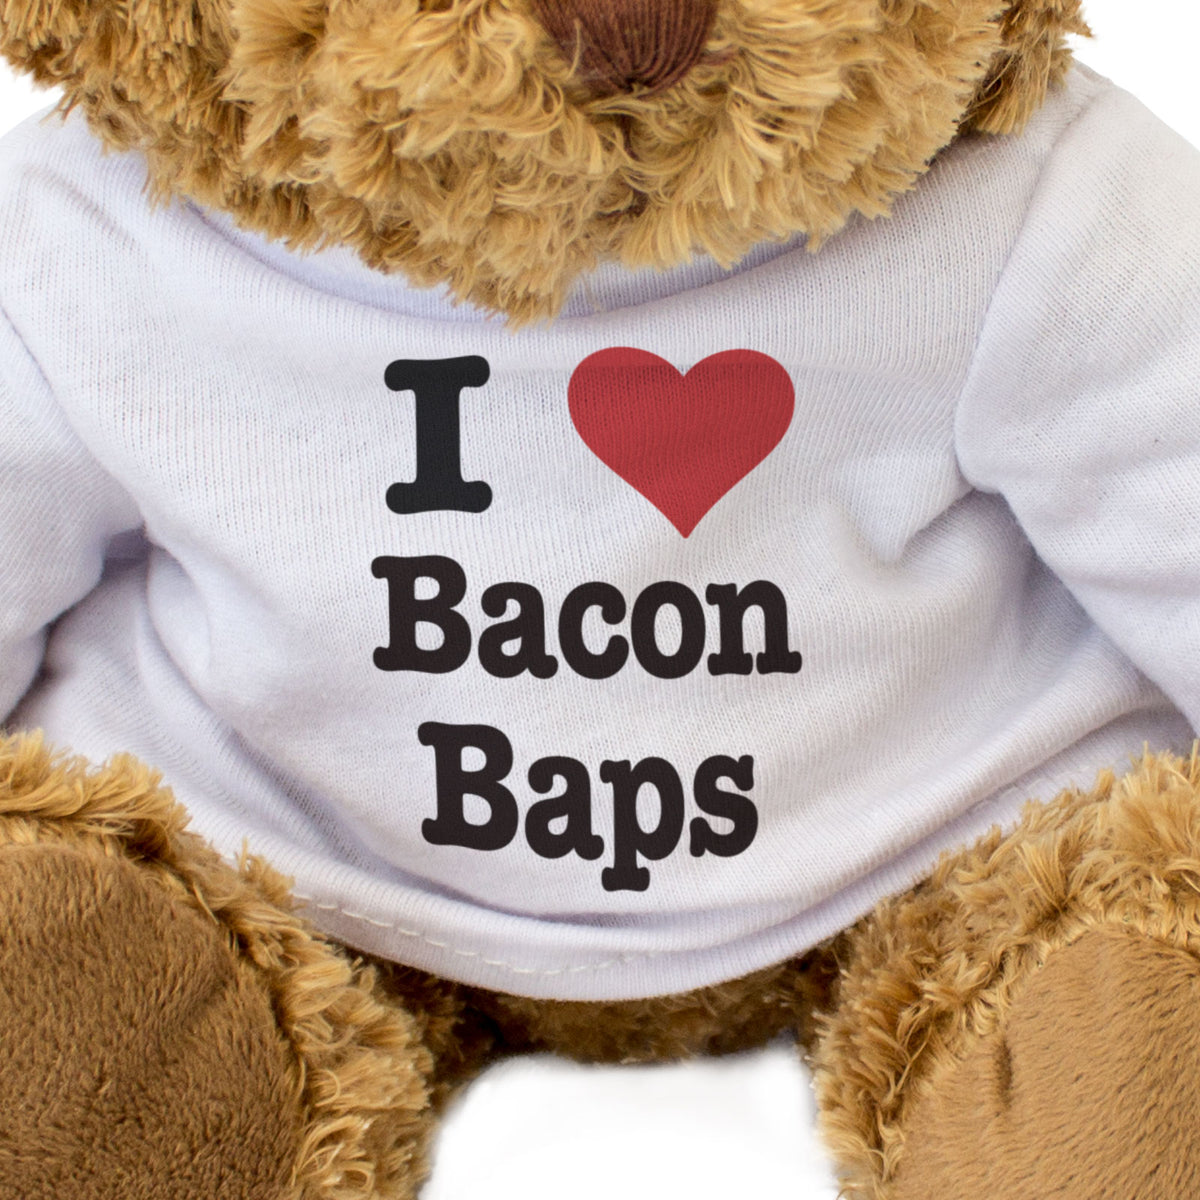 I Love Bacon Baps - Teddy Bear